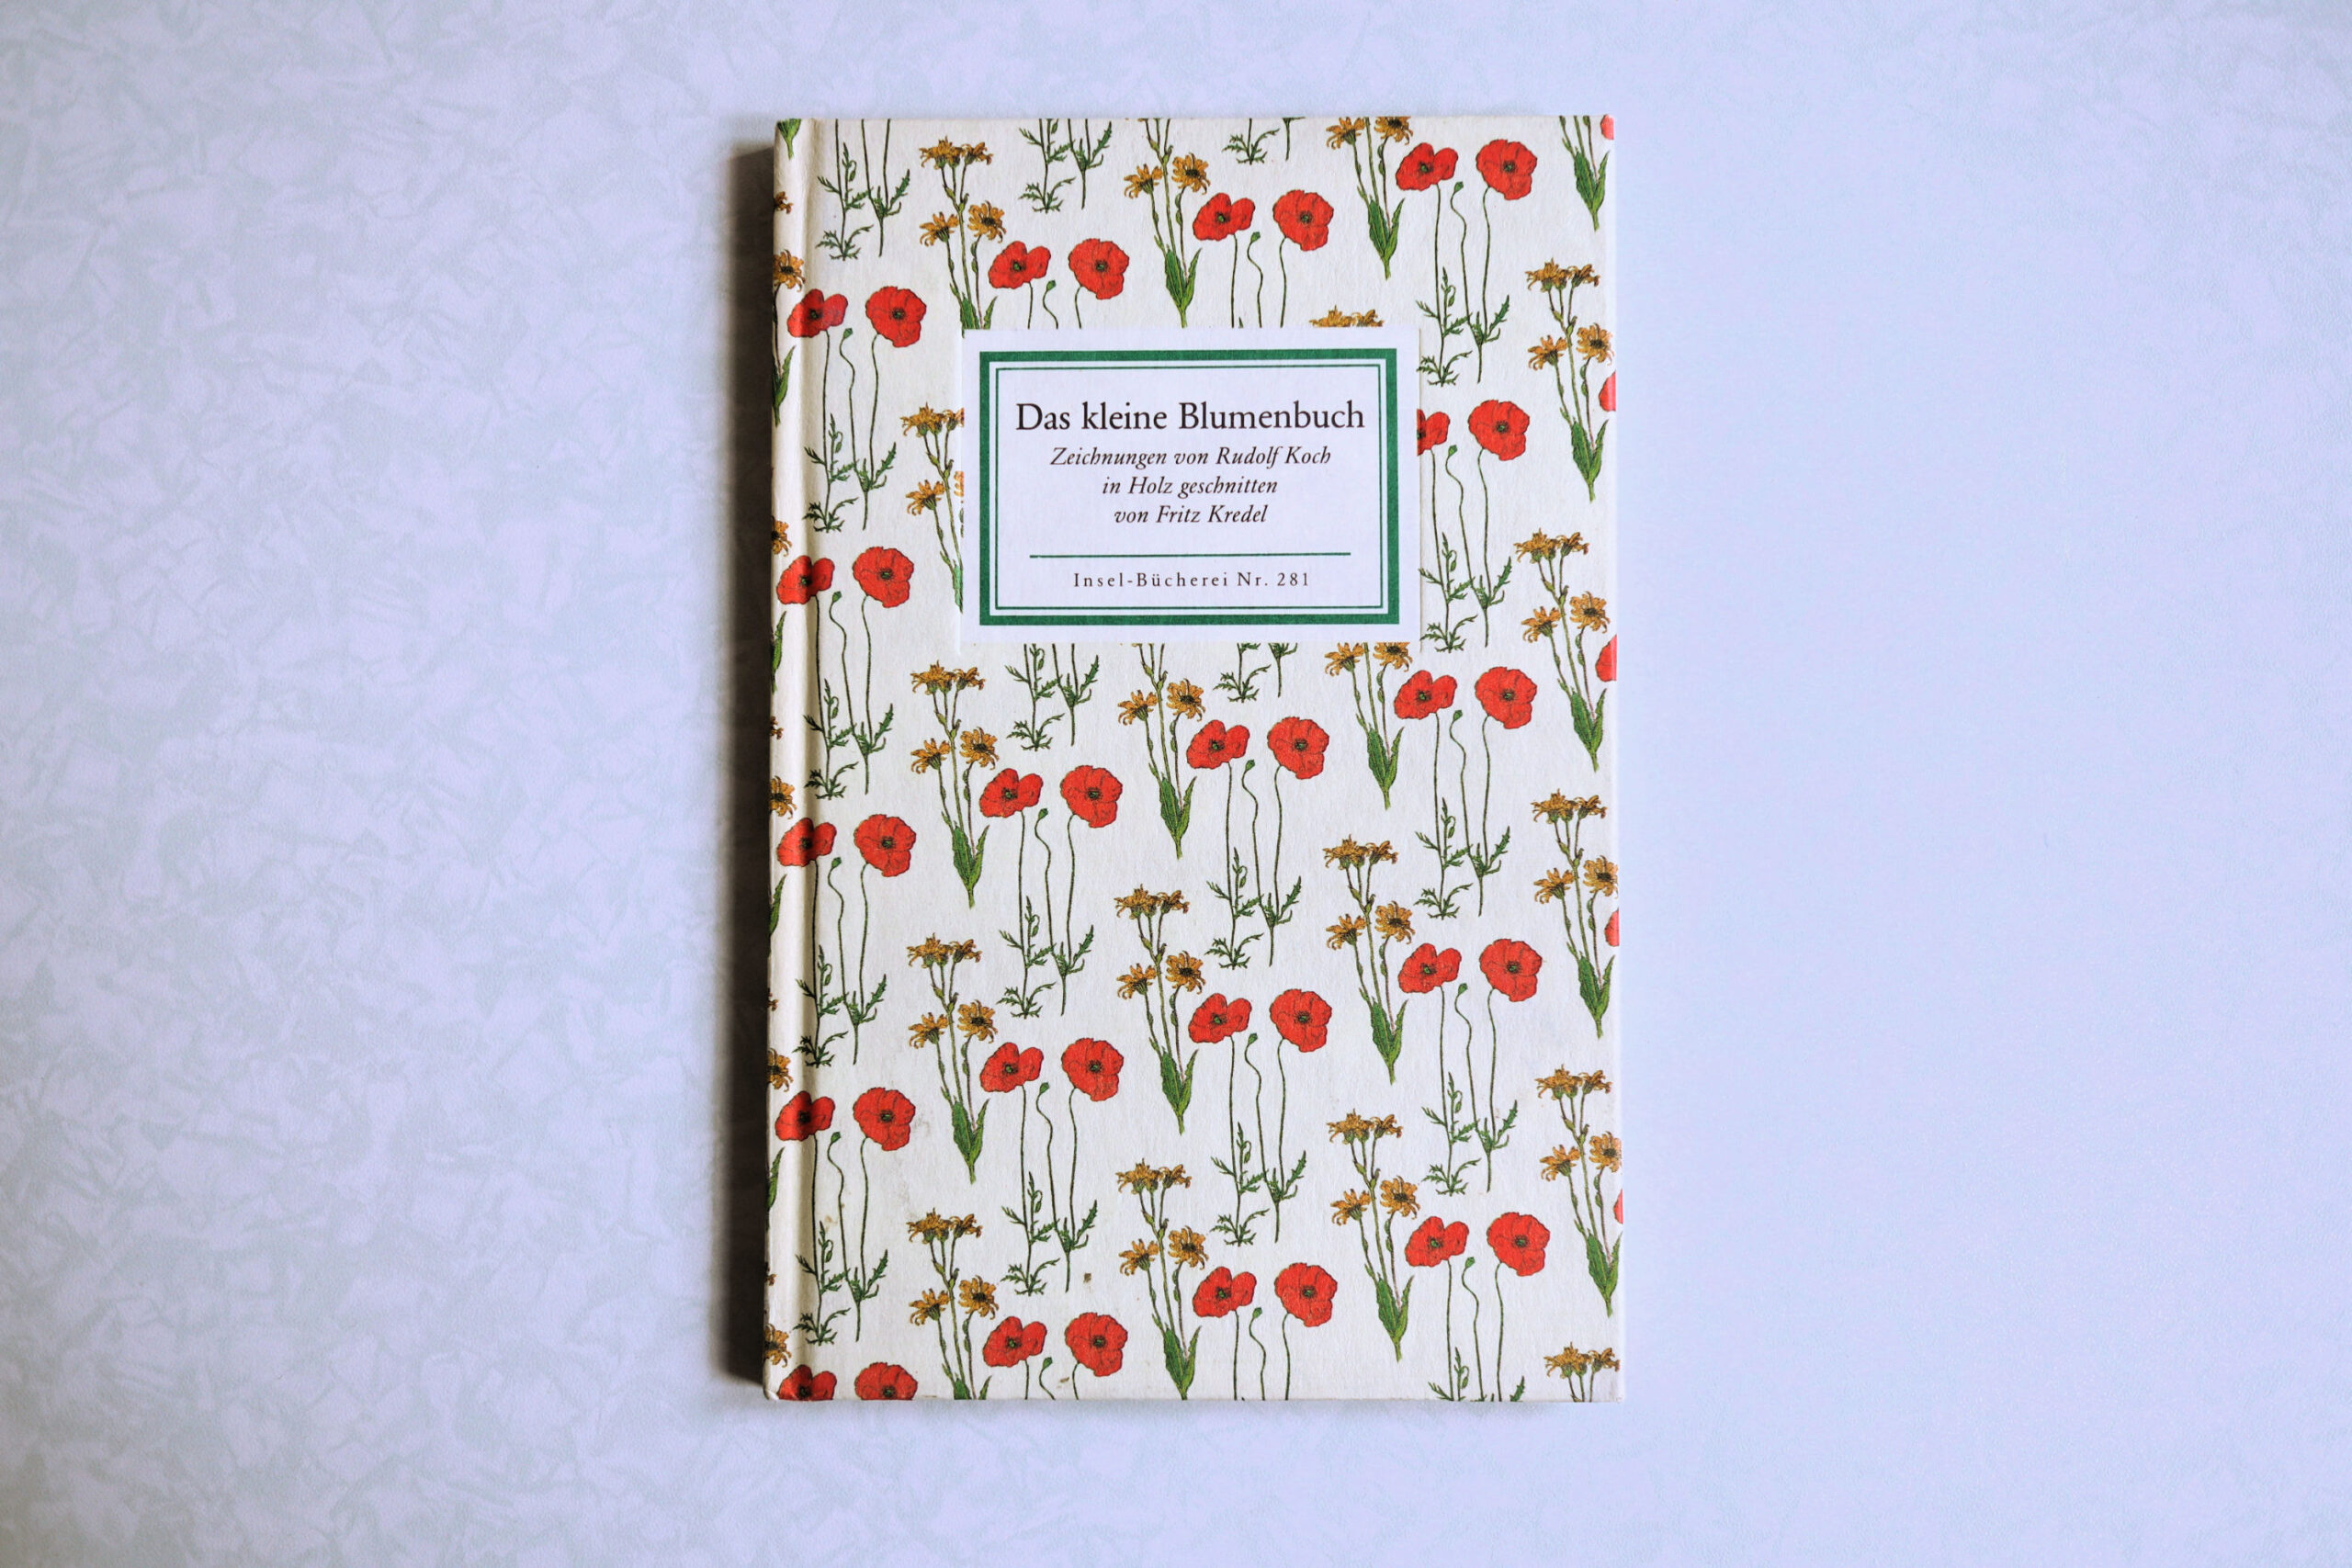 インゼル文庫 281番 小さな花の本 Das kleine Blumenbuch | Frau Vintage